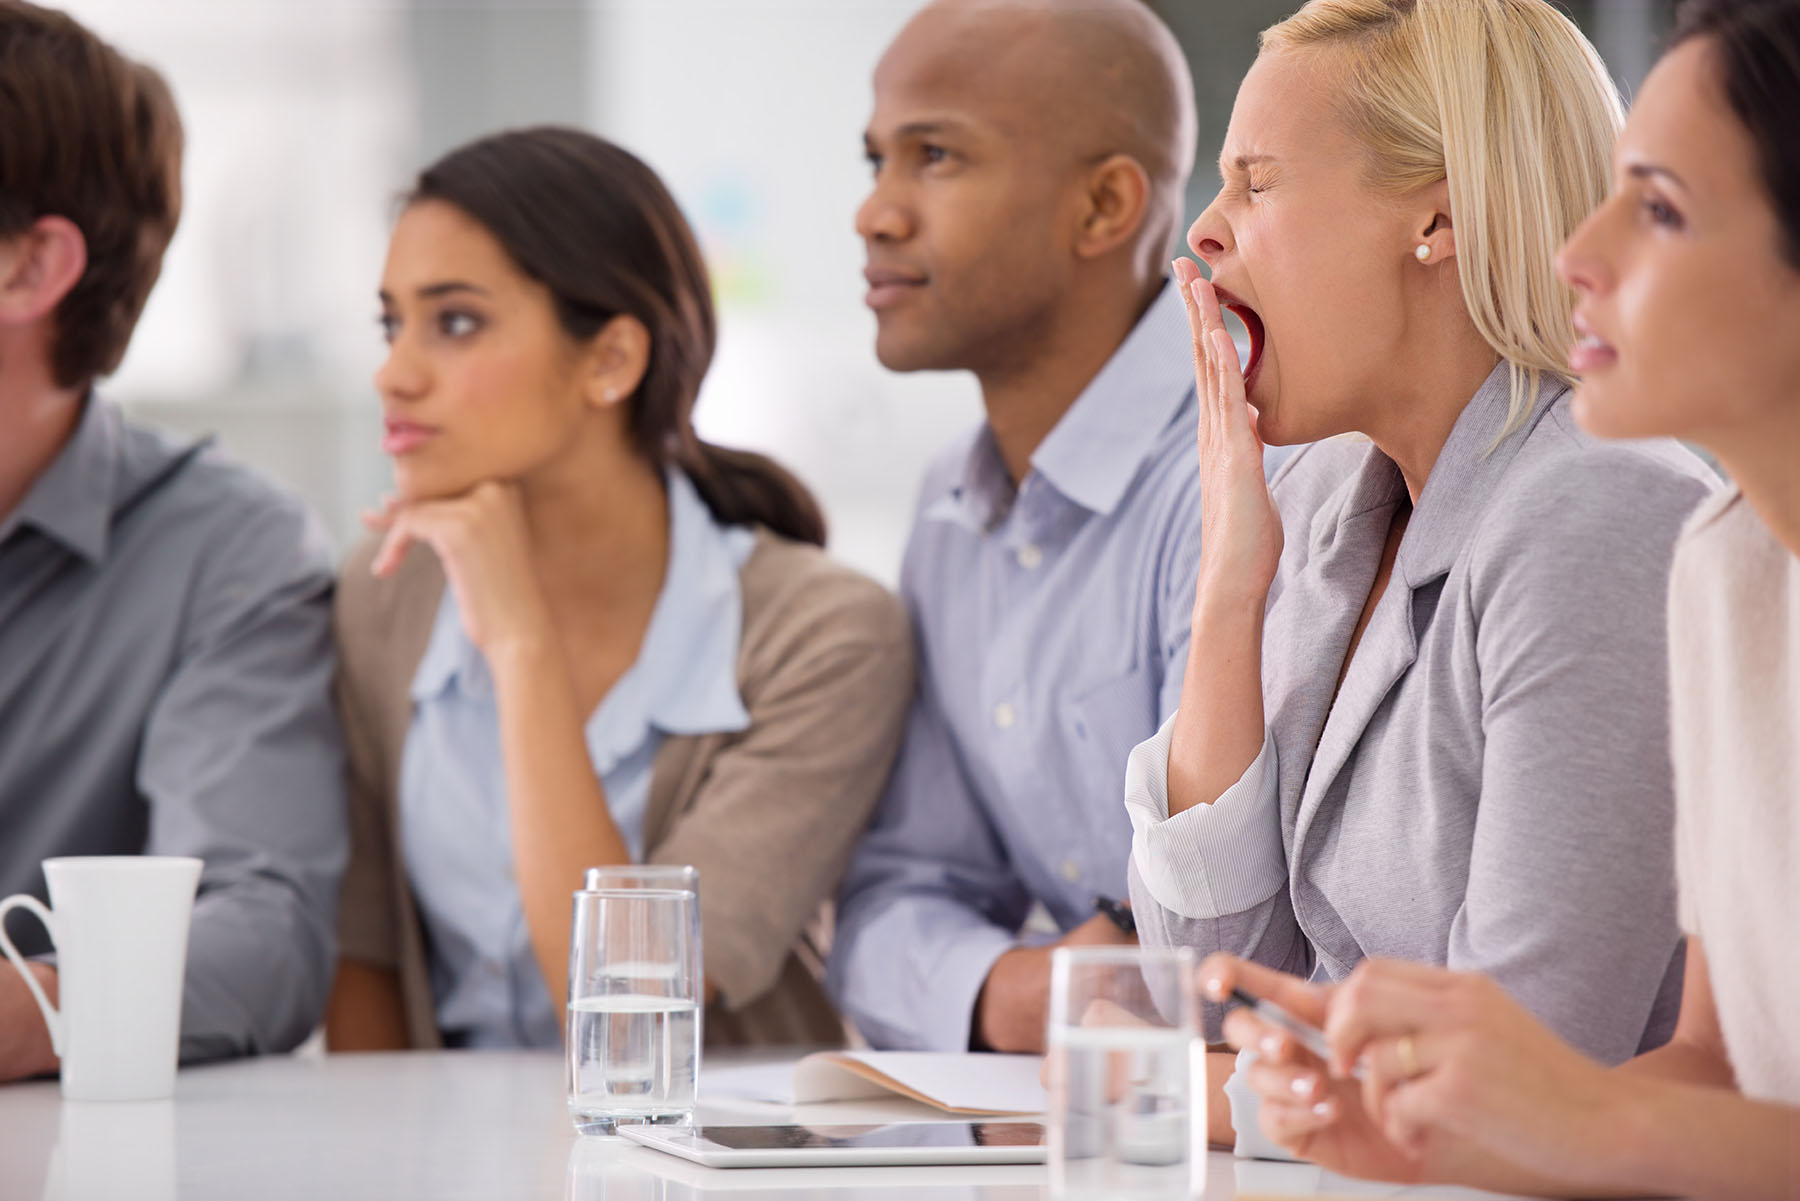 Woman yawns in work meeting